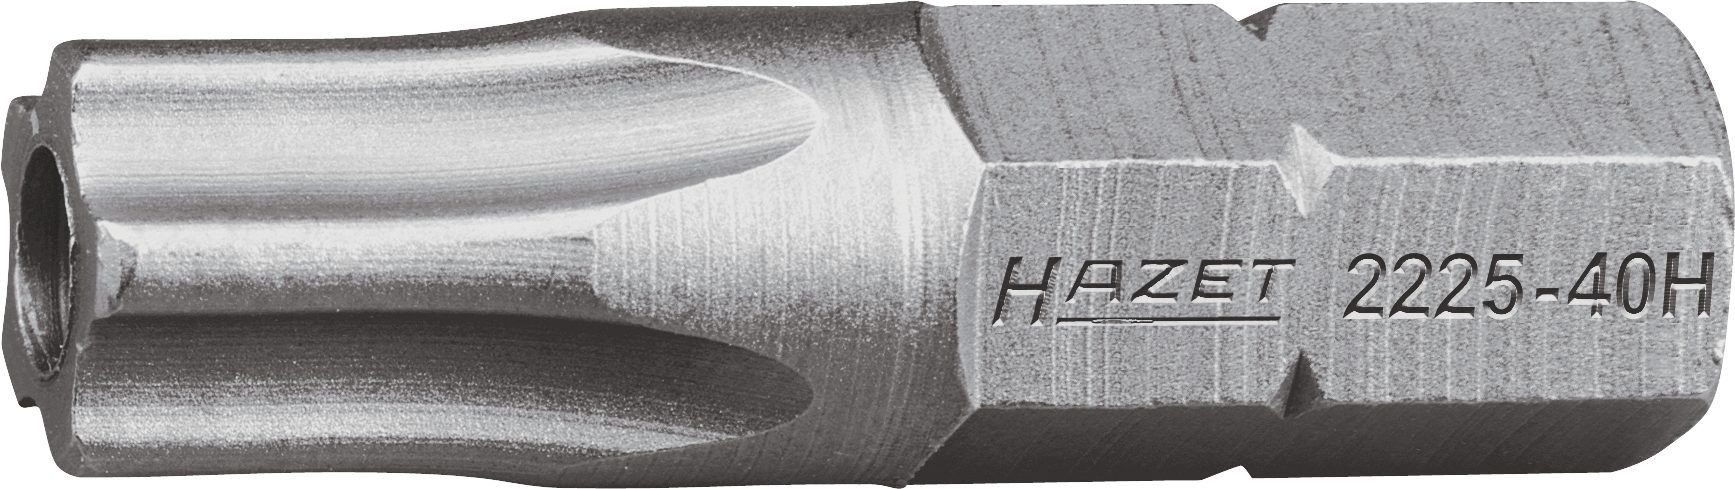 HAZET Bit-Set Hazet 5-Stern-Schraubendr.-Einsatz (Bit), 2225-40H